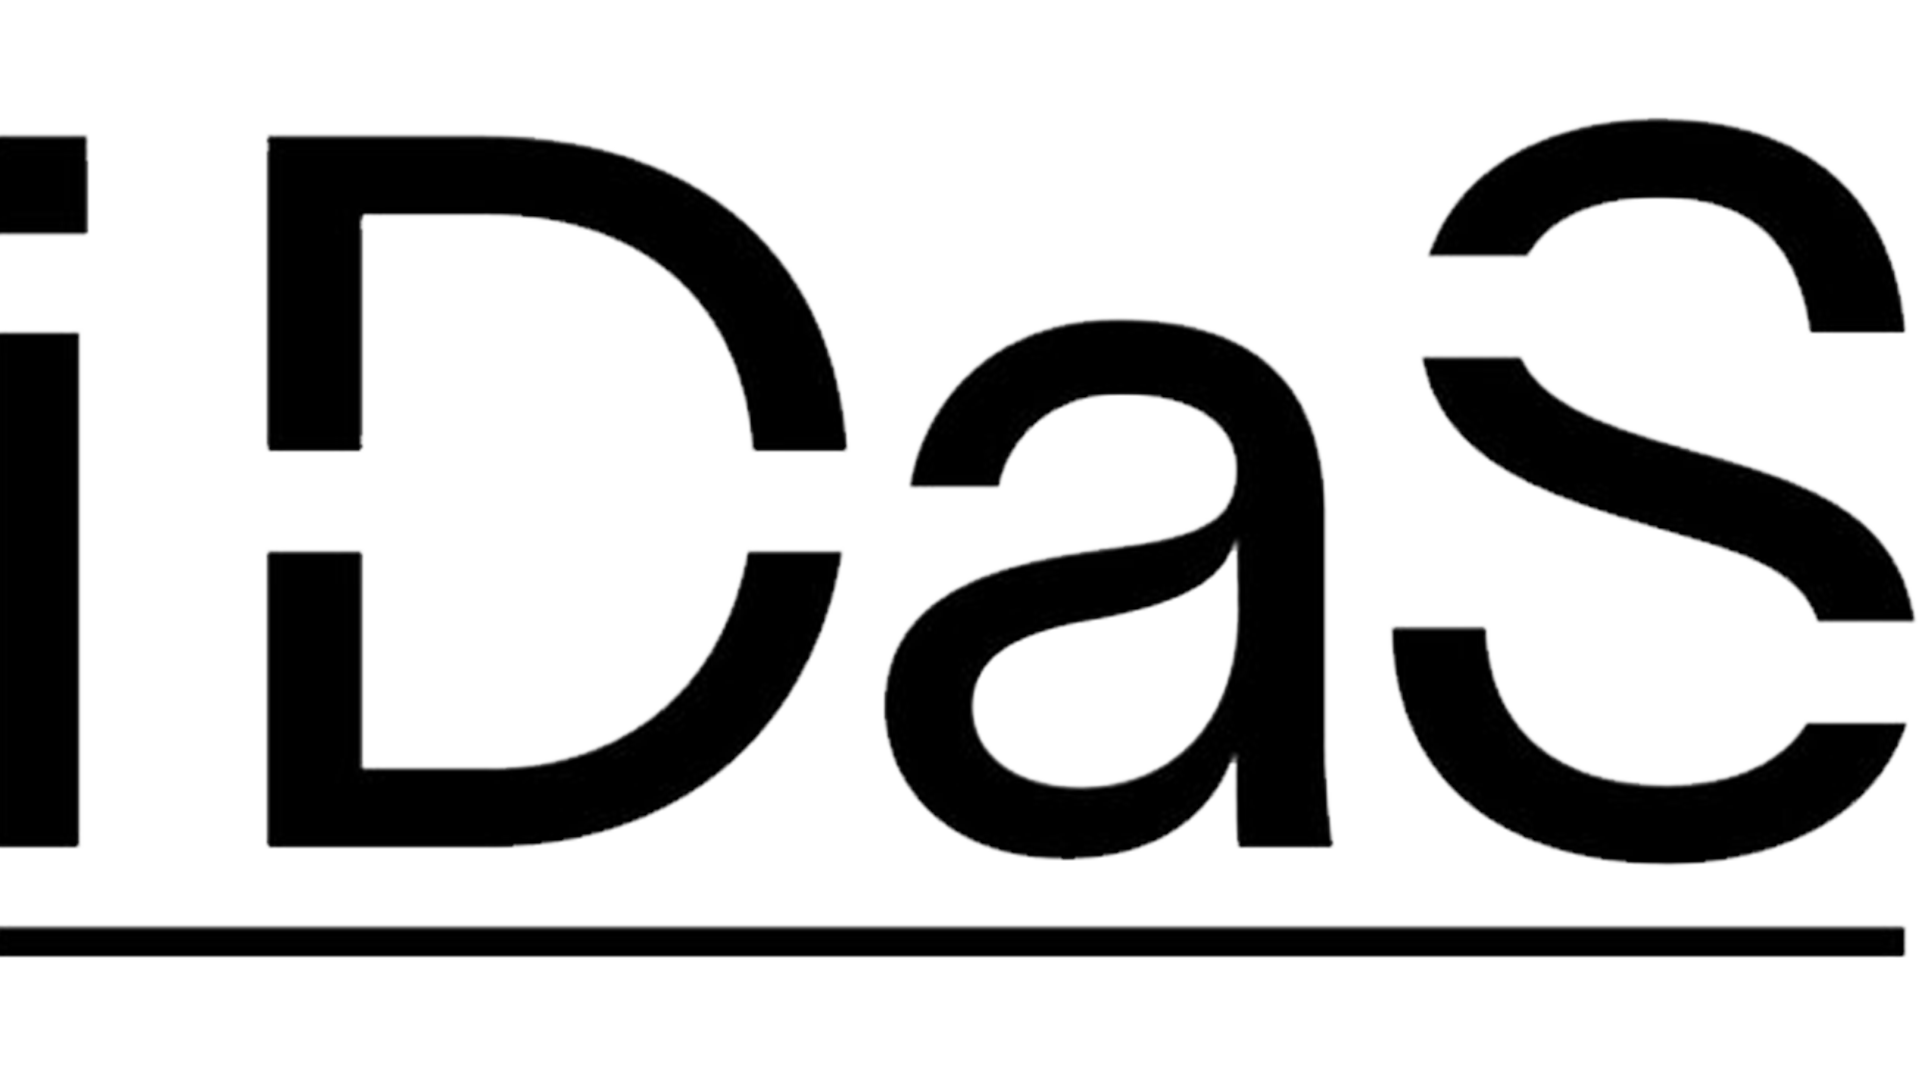  Institute für Data Sciences Solutions (IDaS)